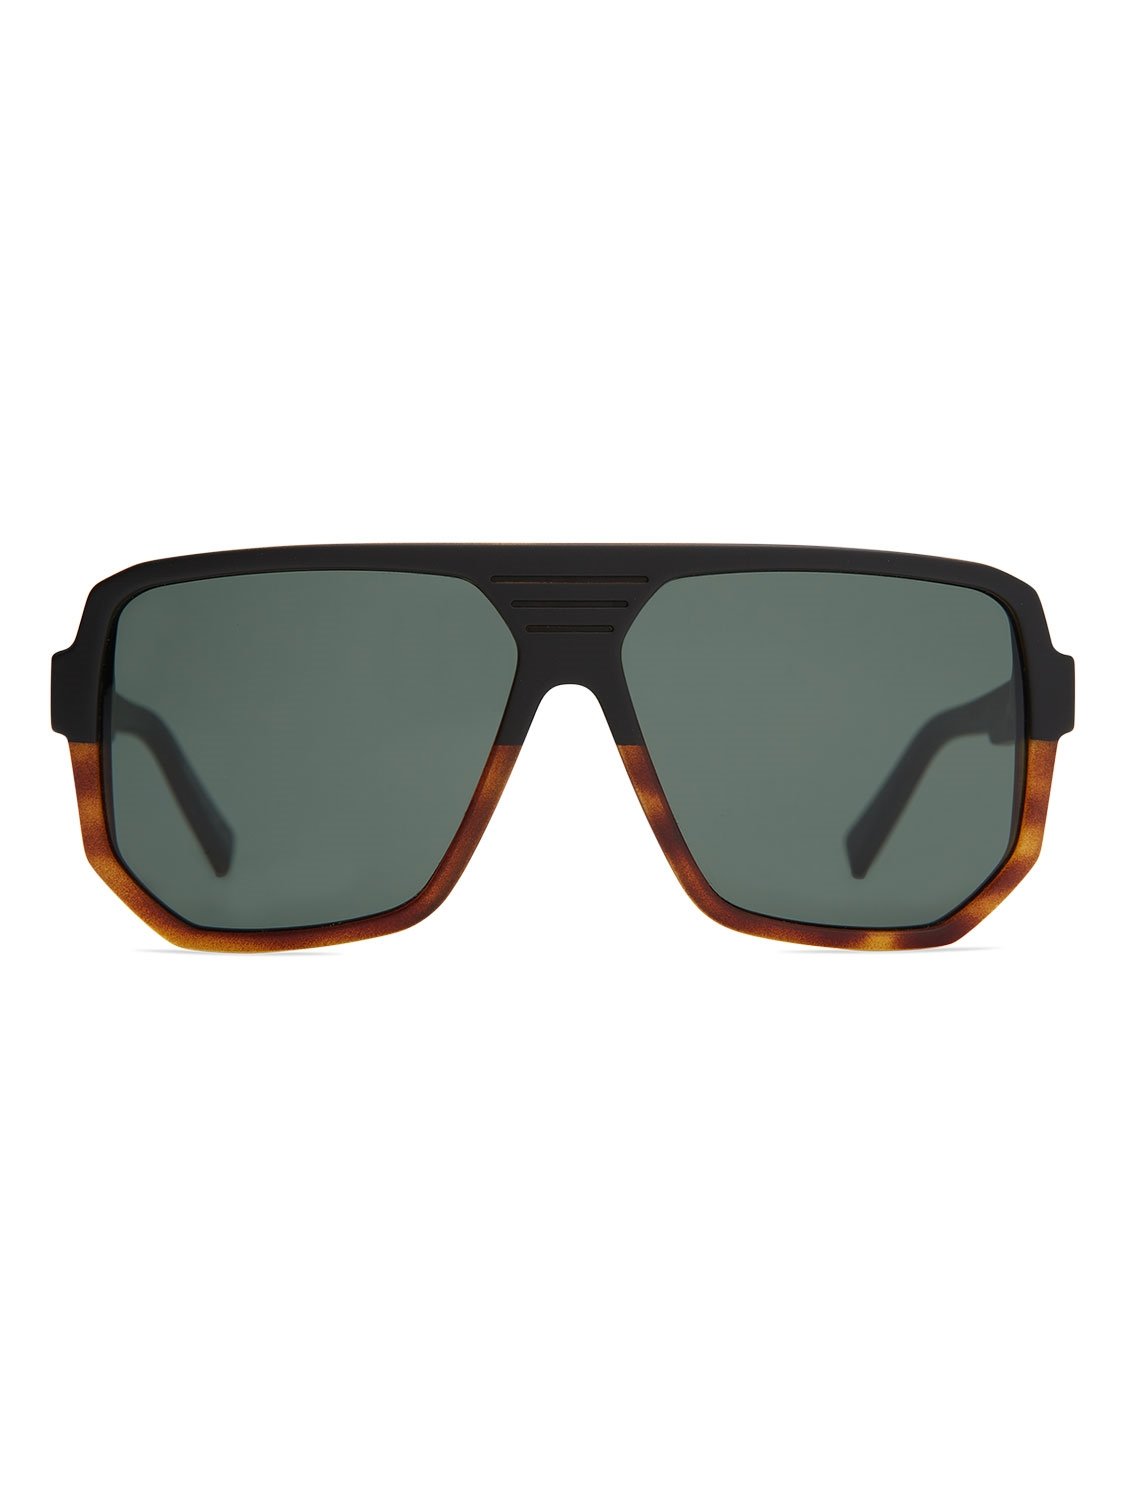 VonZipper Unisex Roller Sunglasses